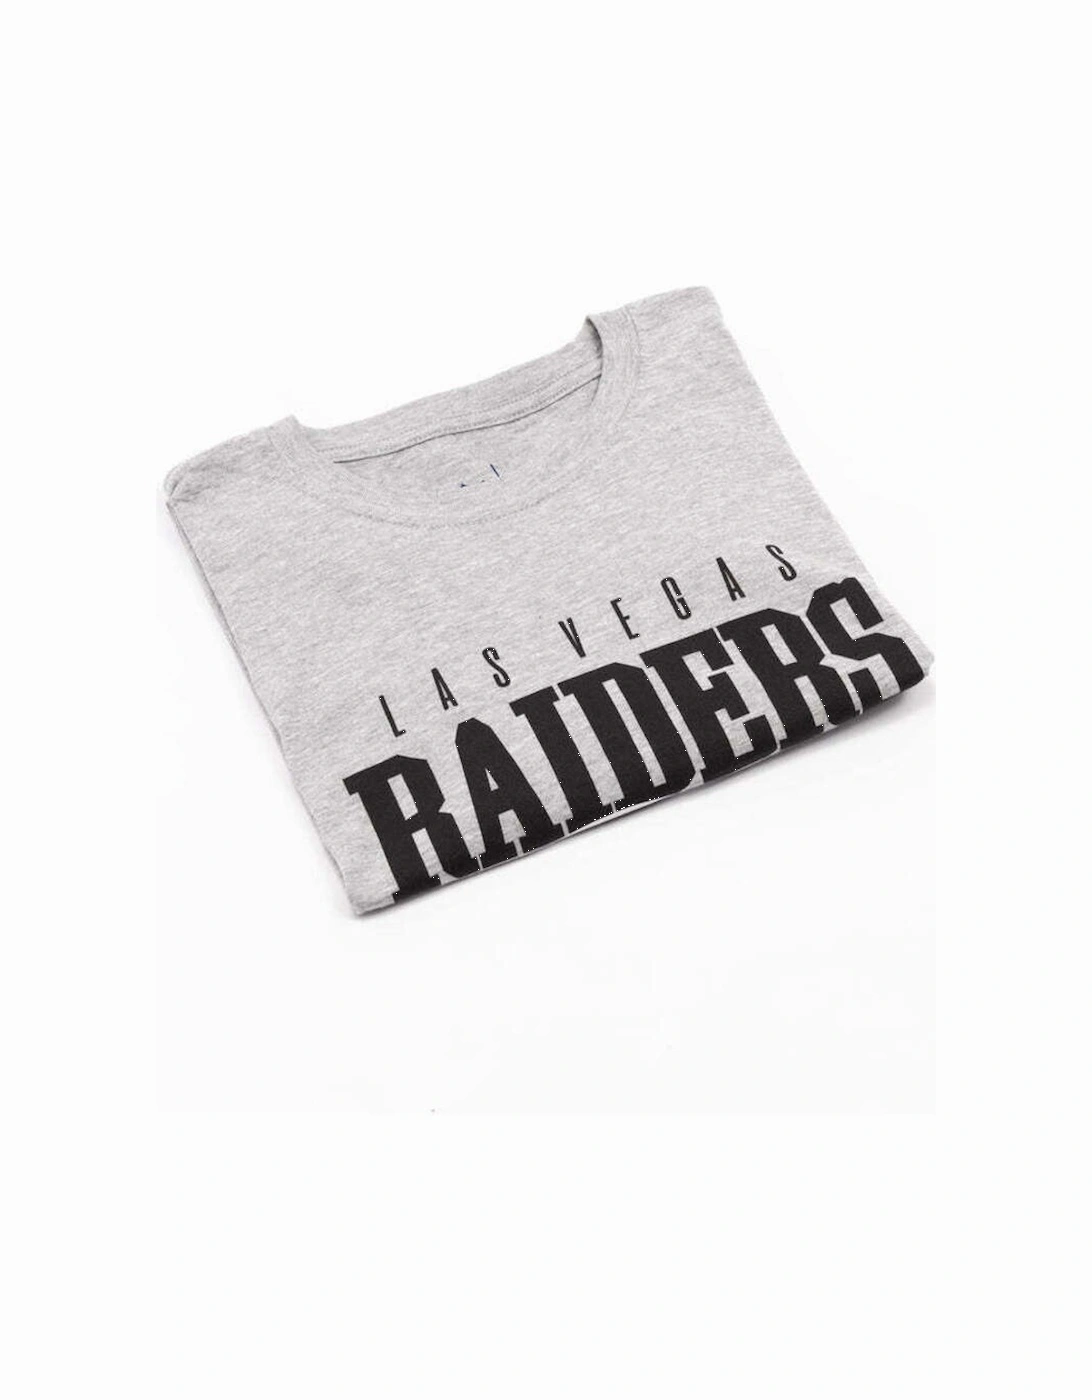 Womens/Ladies Las Vegas Raiders T-Shirt